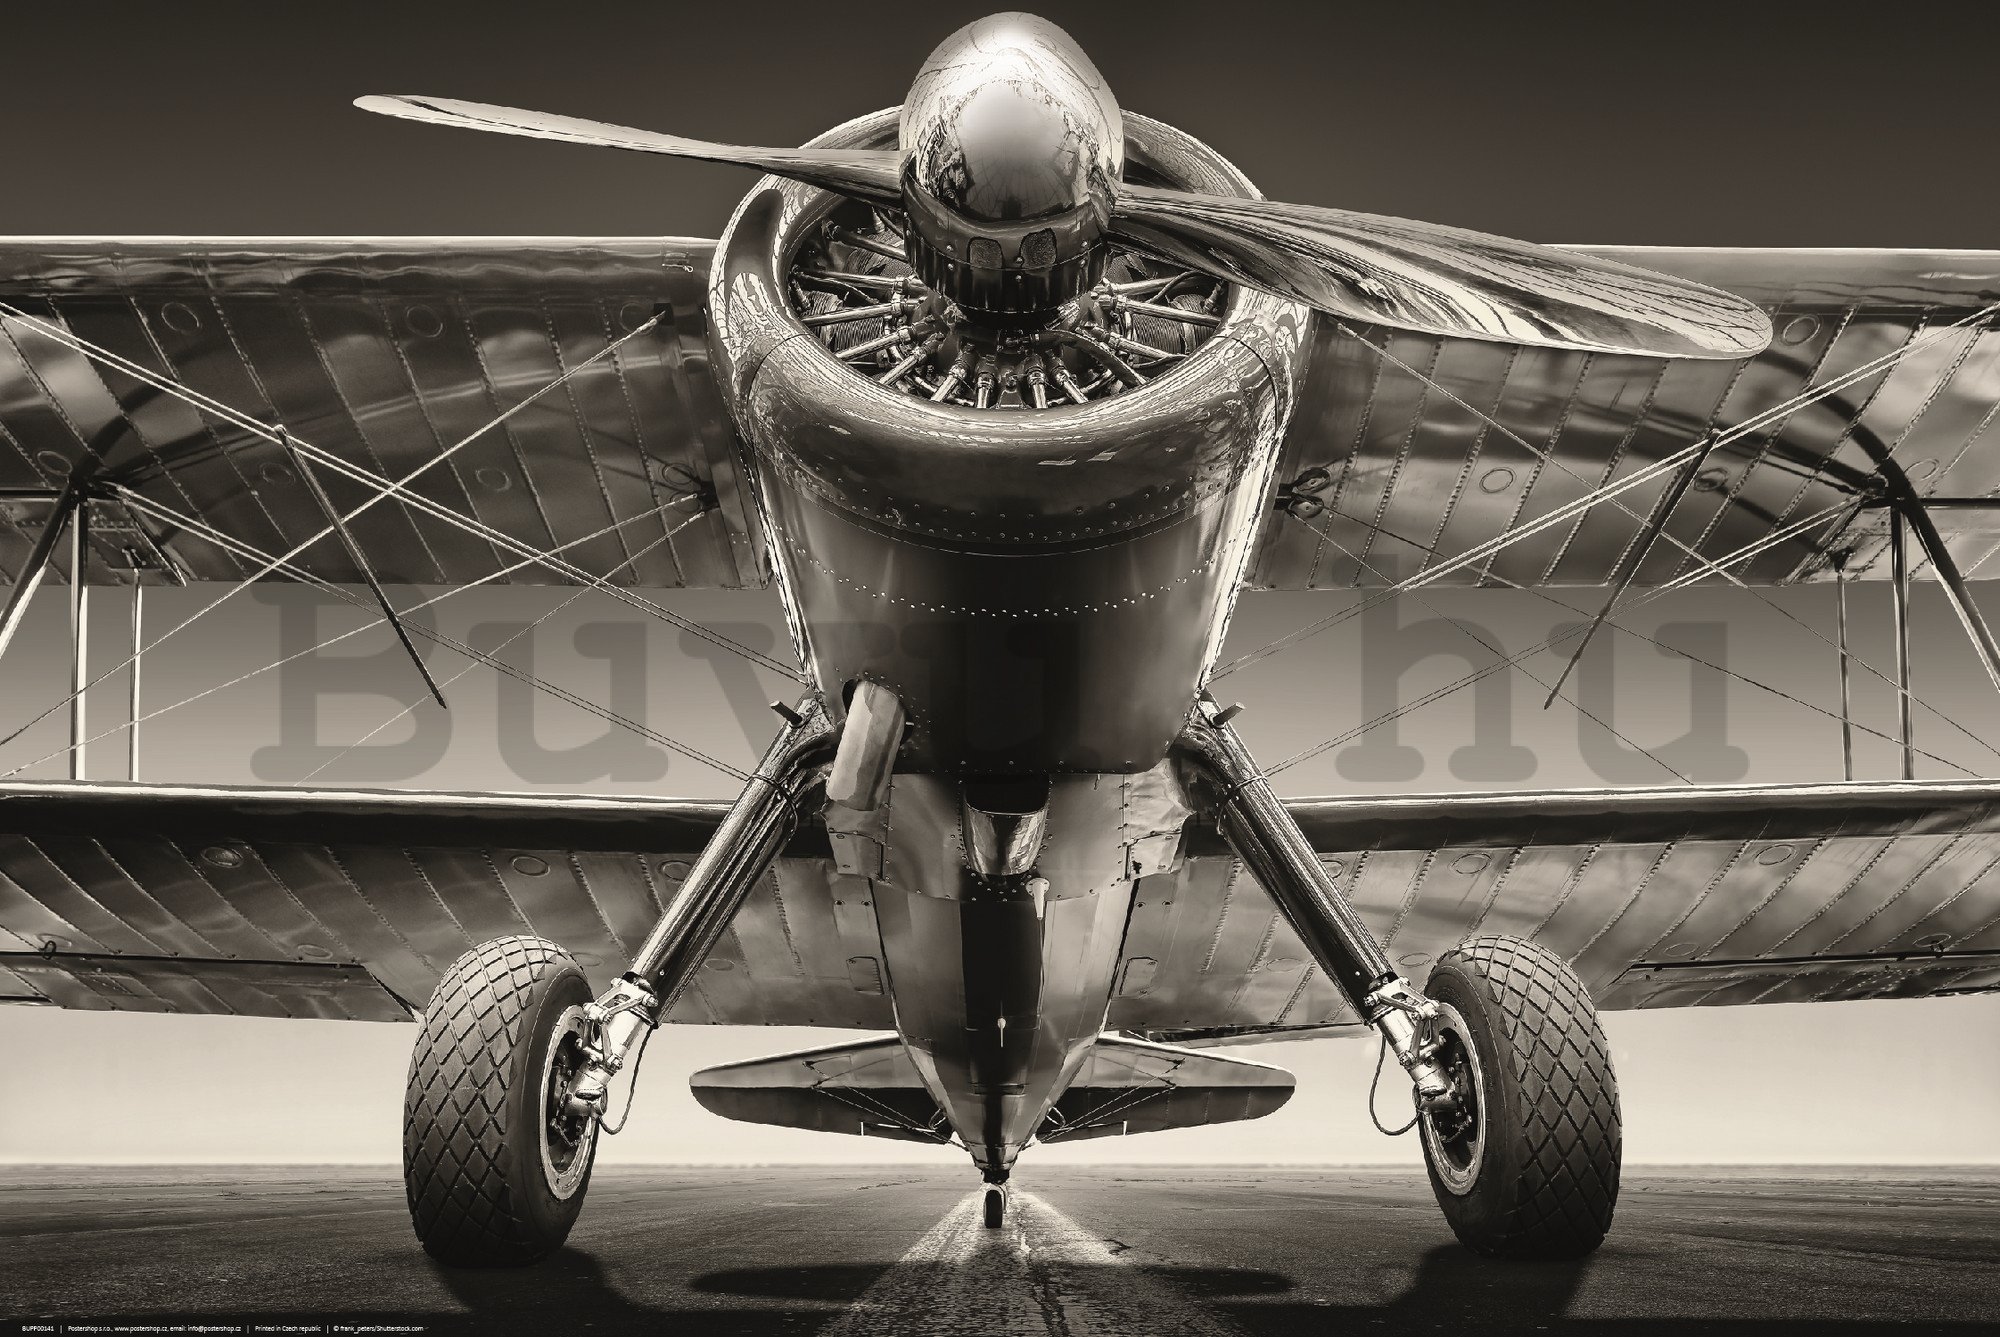 Poster: A kétfedelű repülőgép látképe